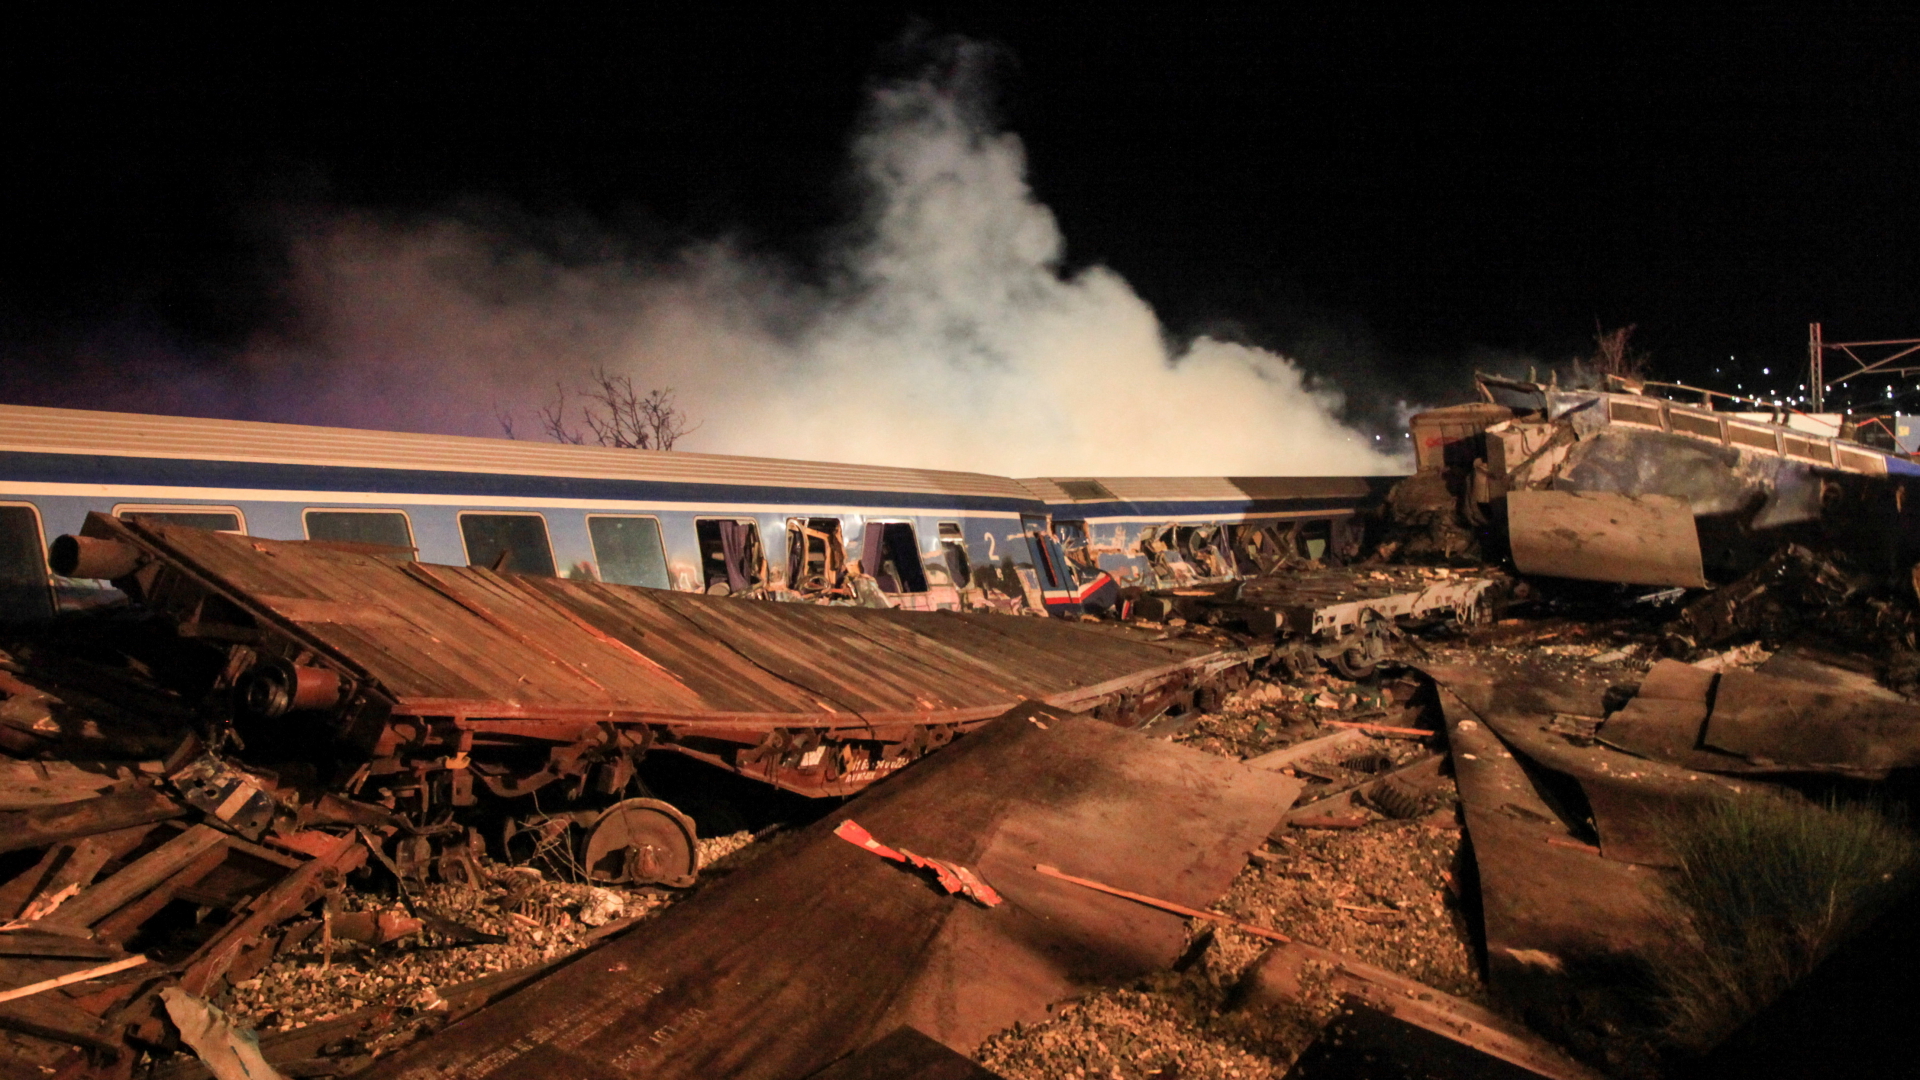 Waggontrümmer nach einem Zusammenstoß von Zügen bei Larissa in Griechenland | REUTERS